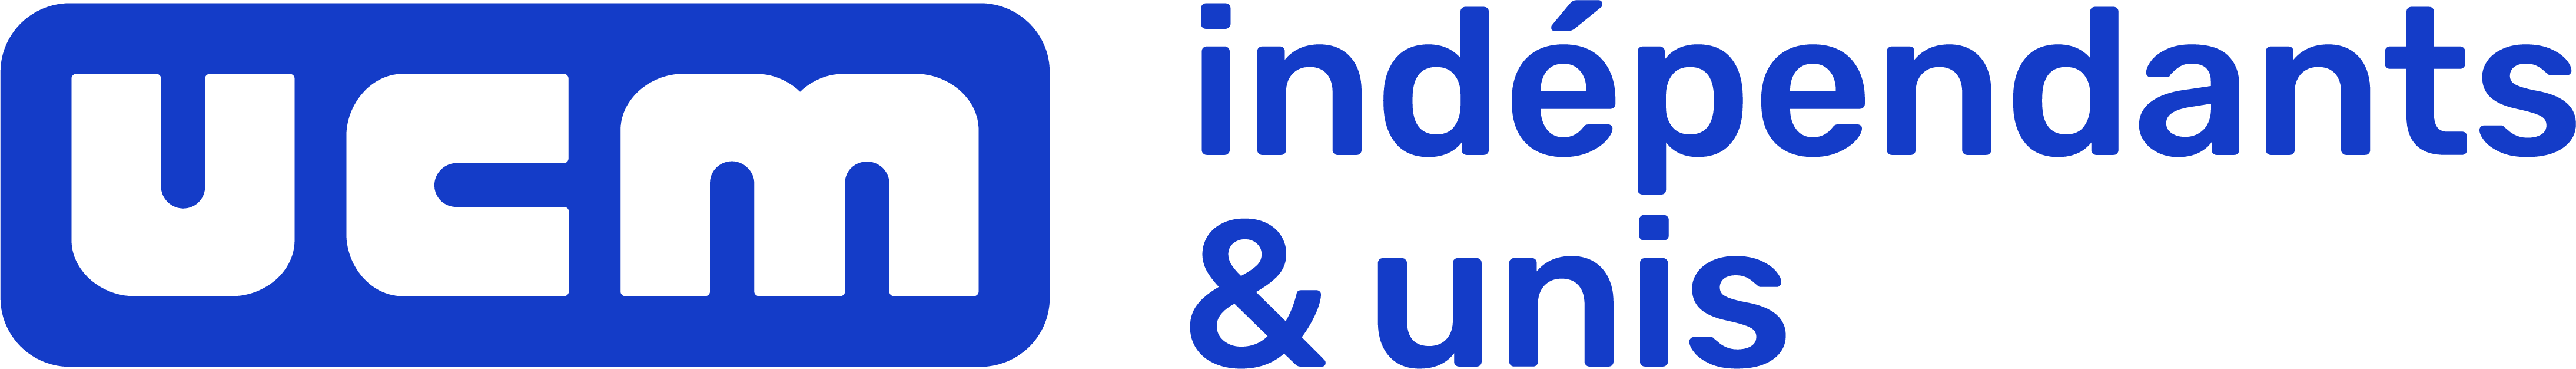 Ucm 2021 logo